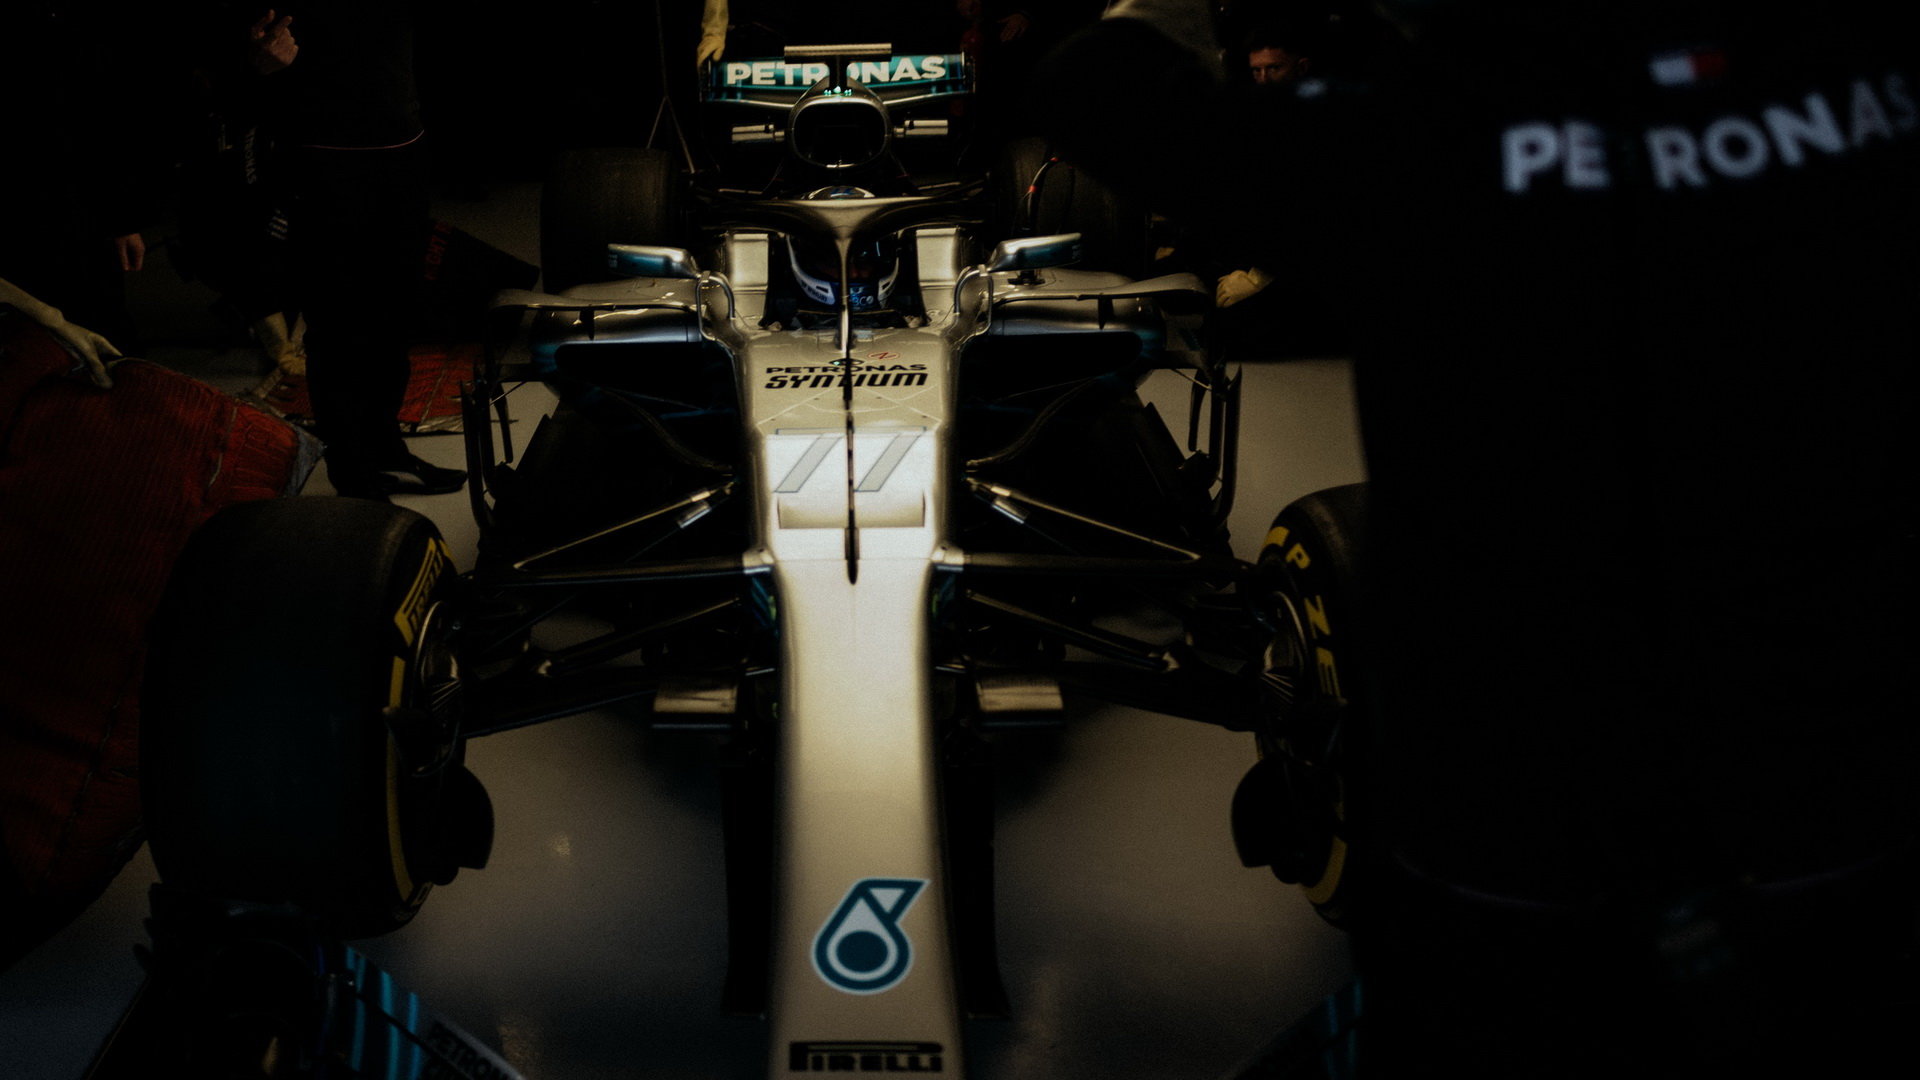 Valtteri Bottas prohání nový Mercedes W09 po trati v Silverstone